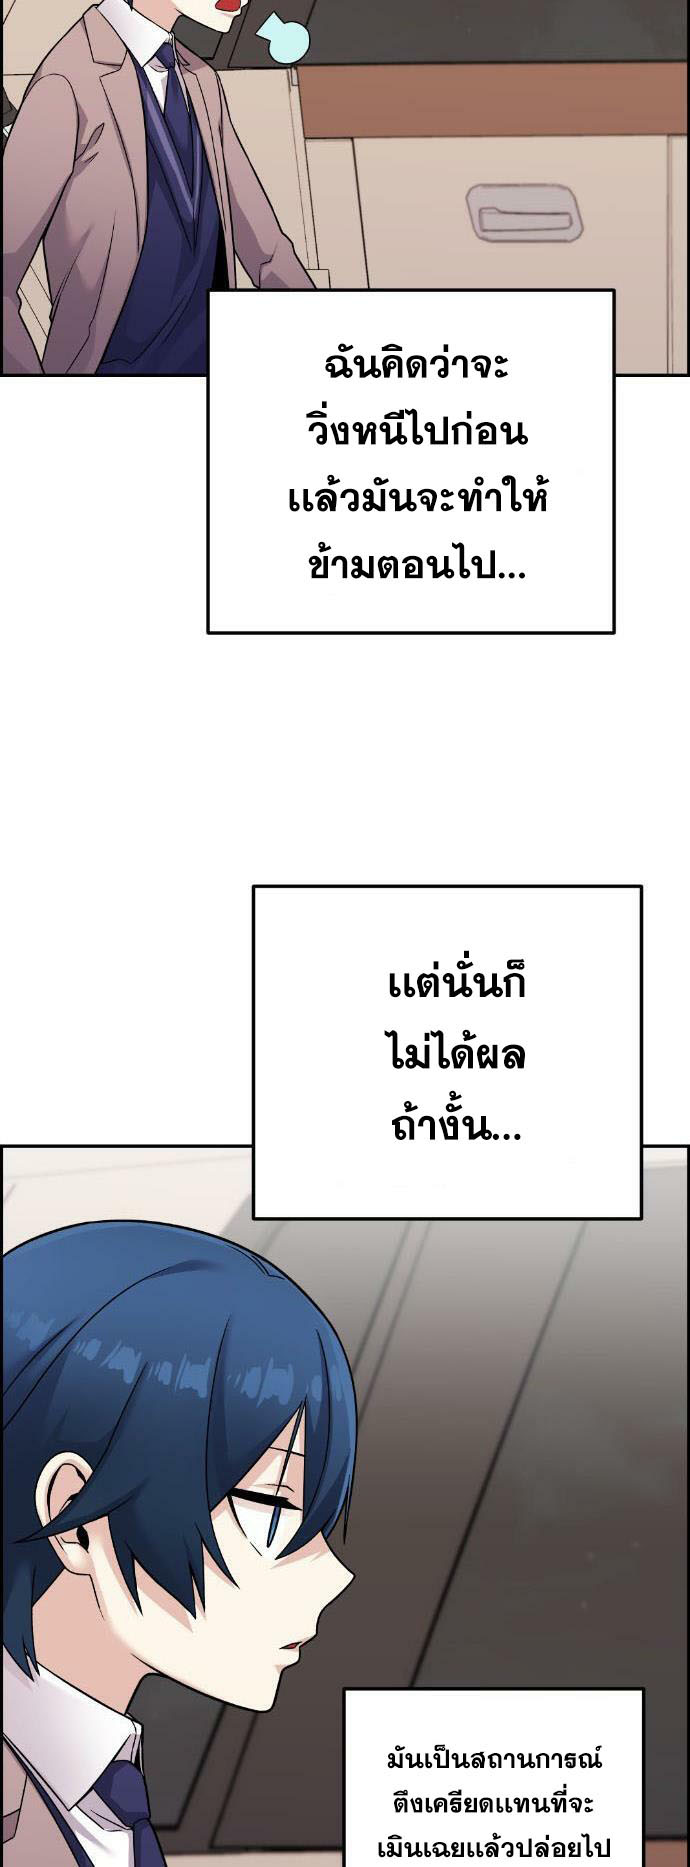 Webtoon Character Na Kang Lim à¸•à¸­à¸™à¸—à¸µà¹ˆ 33 (13)